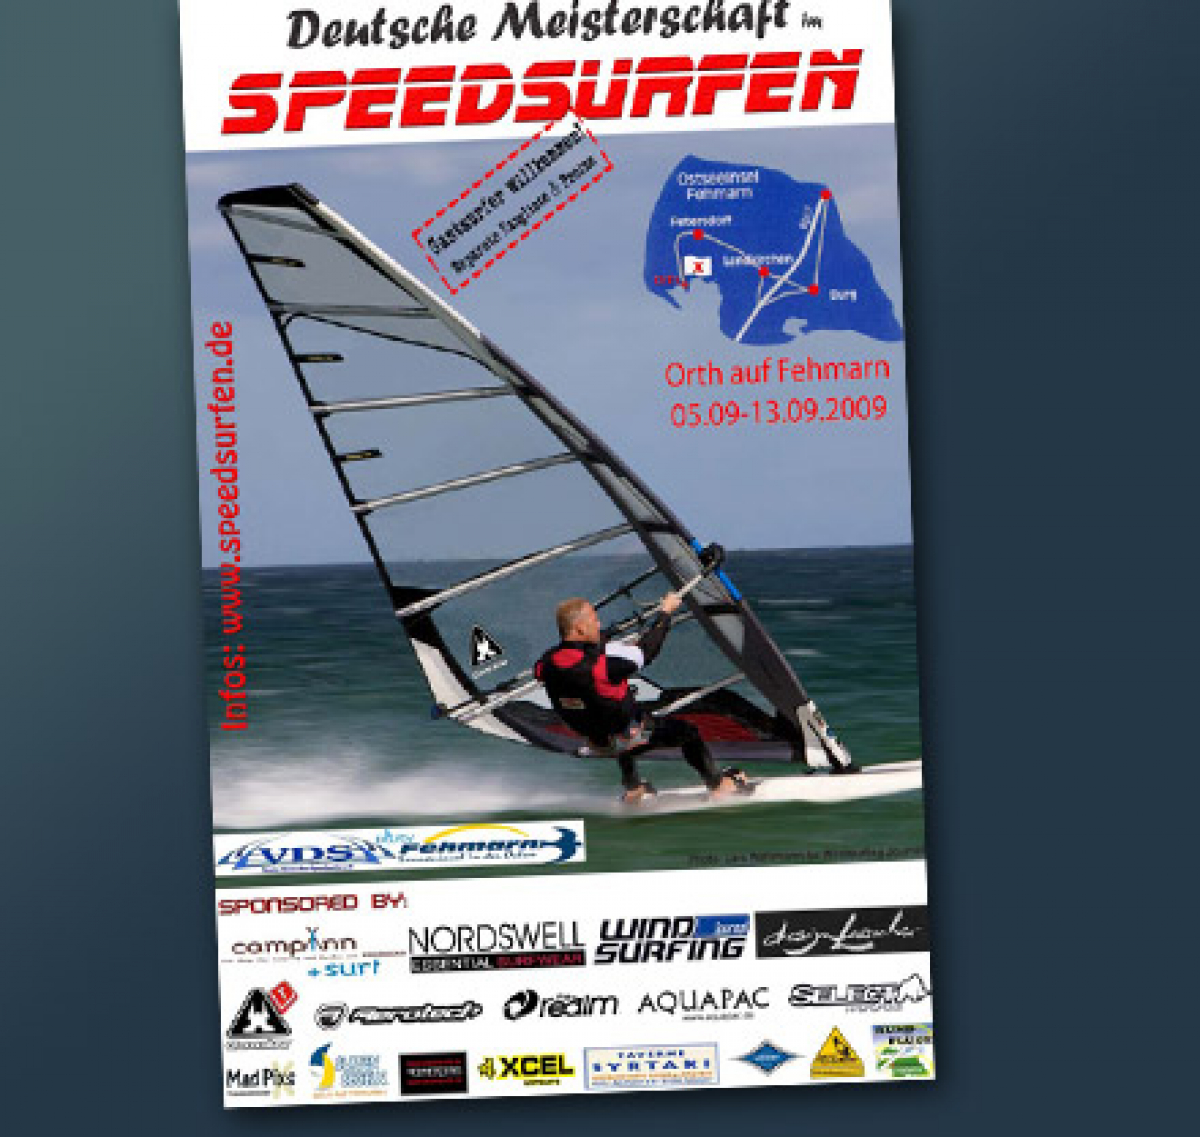 Speedsurf Finale - DM auf Fehmarn